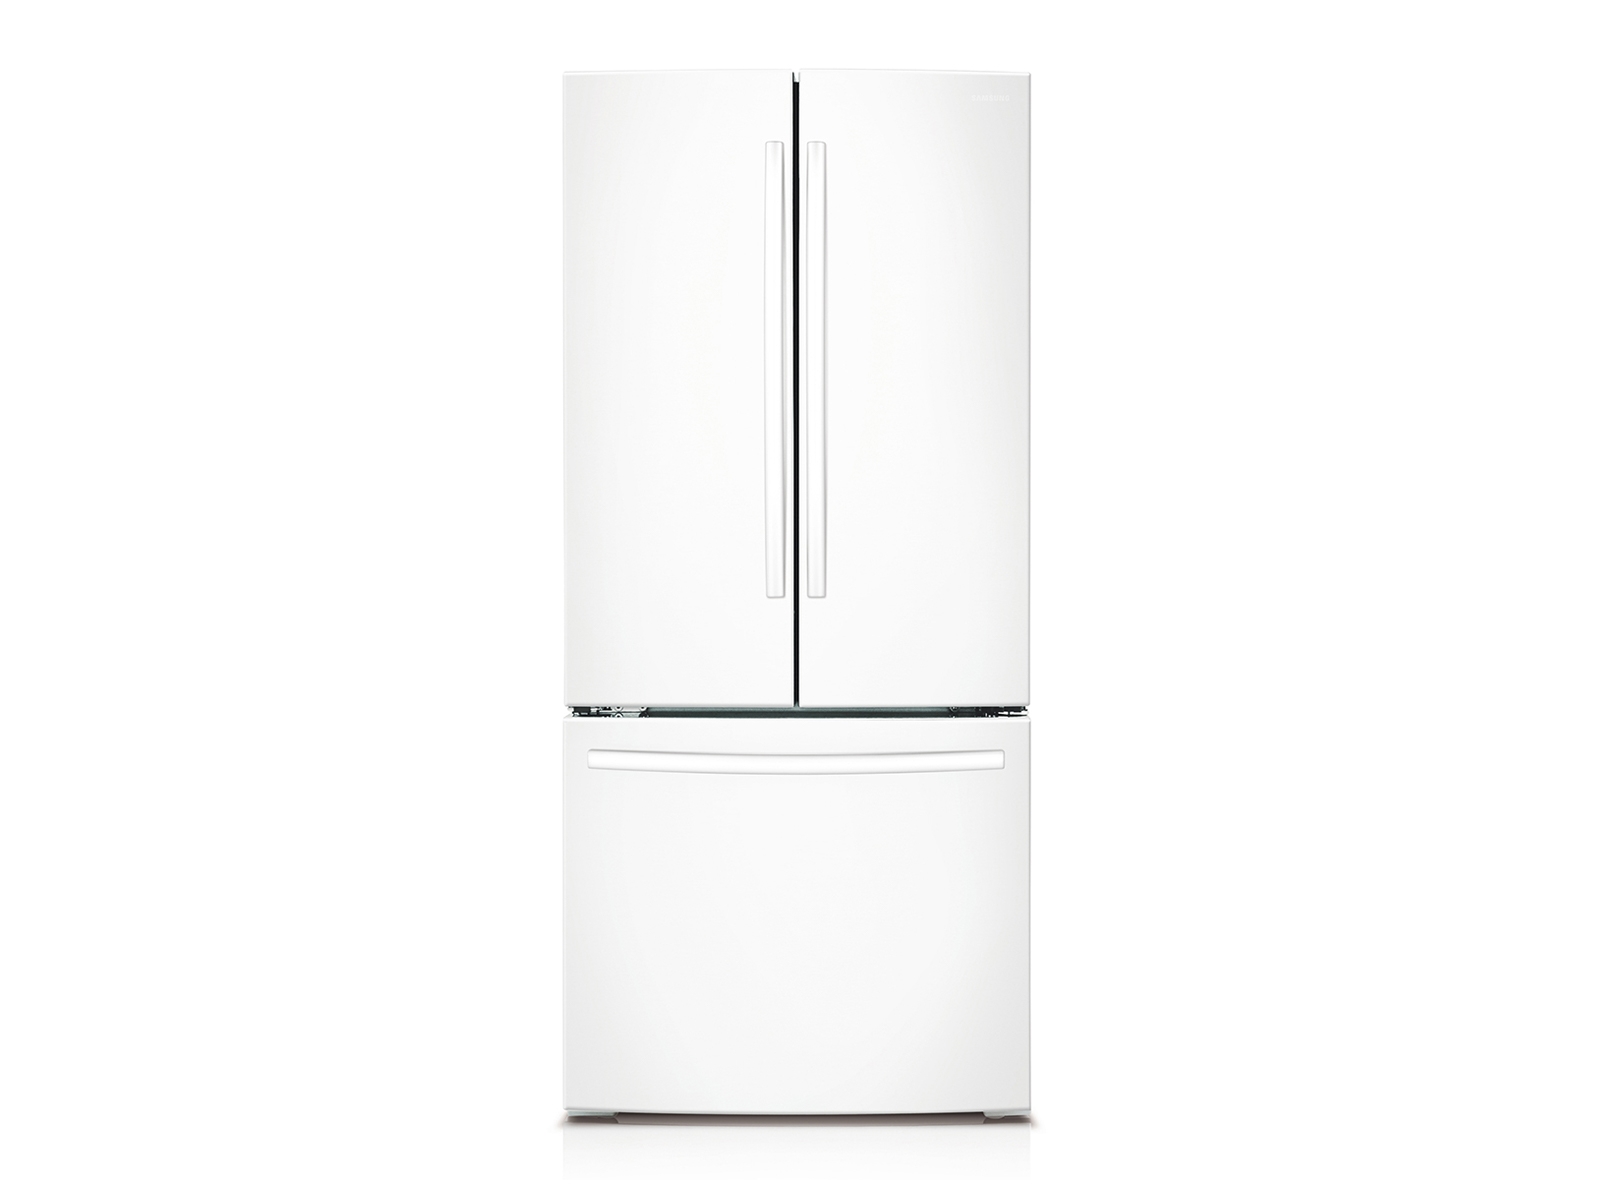 25 cu. ft. 4-Door French Door Refrigerator in White Refrigerator -  RF25HMEDBWW/AA